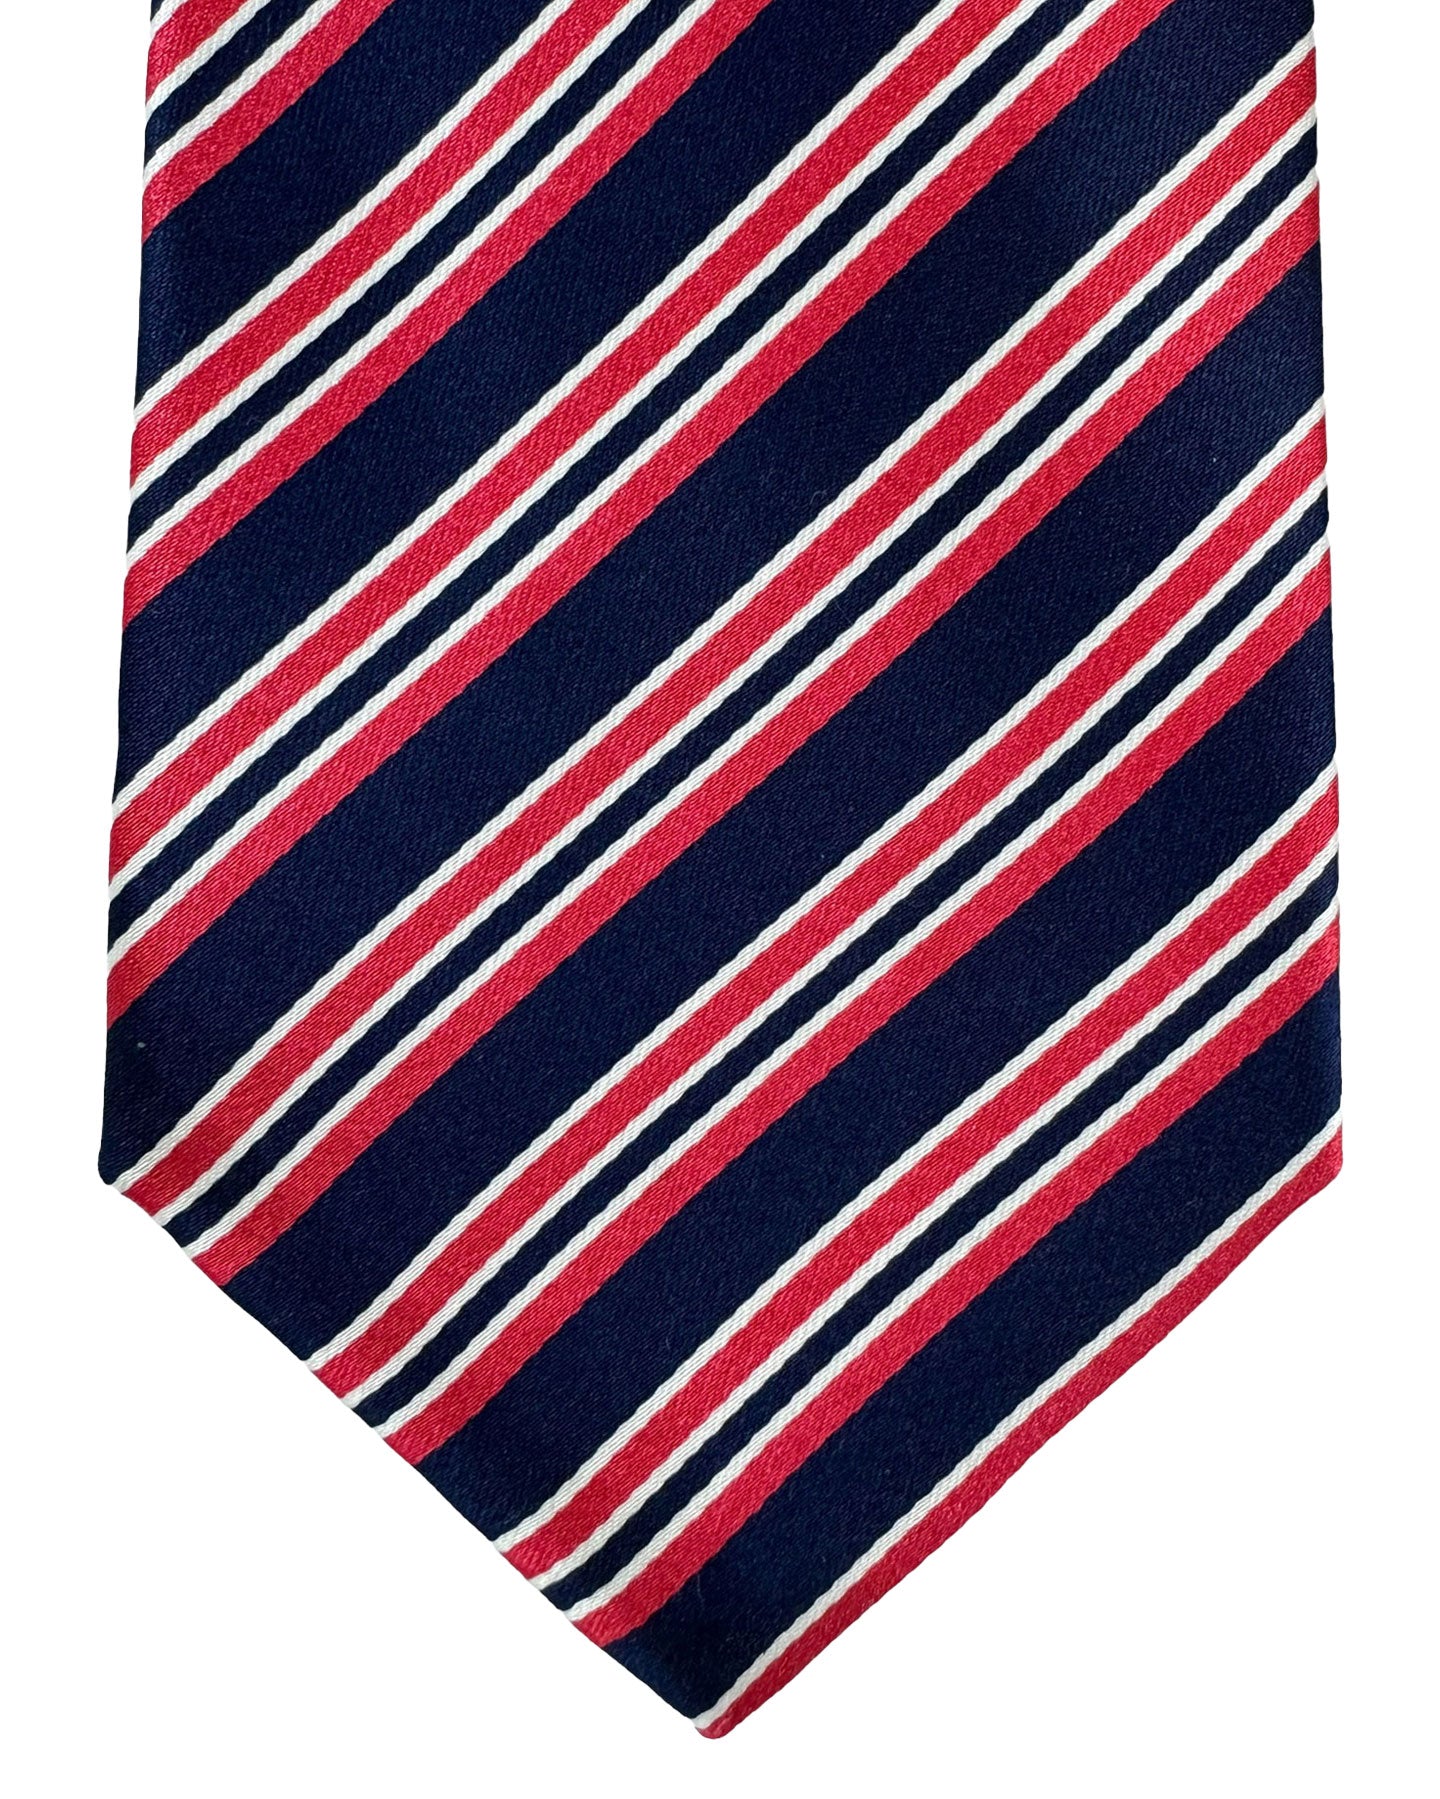 Kiton Tie Red Dark Blue Stripes - Sevenfold Necktie